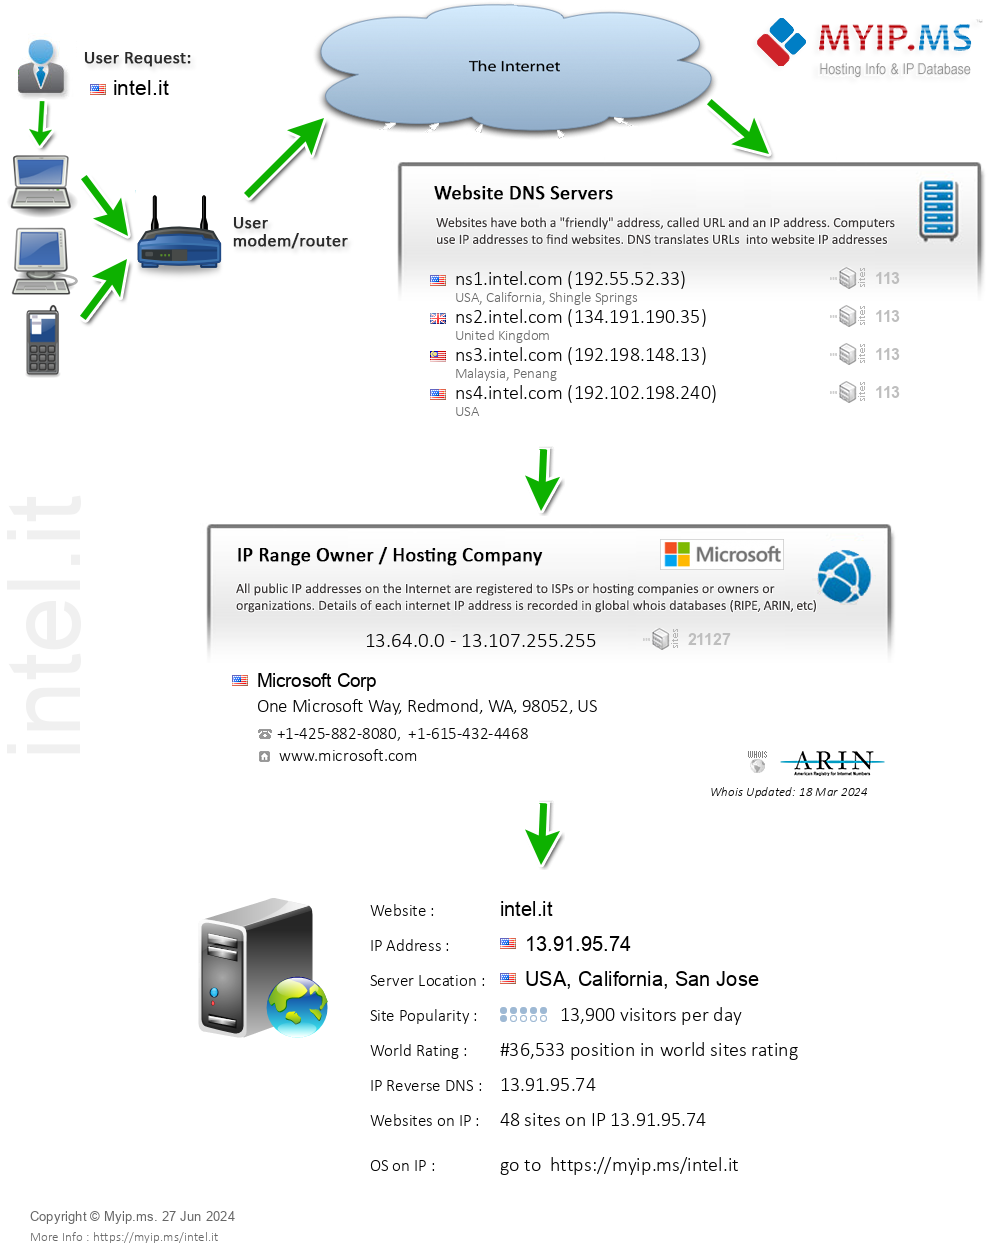 Intel.it - Website Hosting Visual IP Diagram